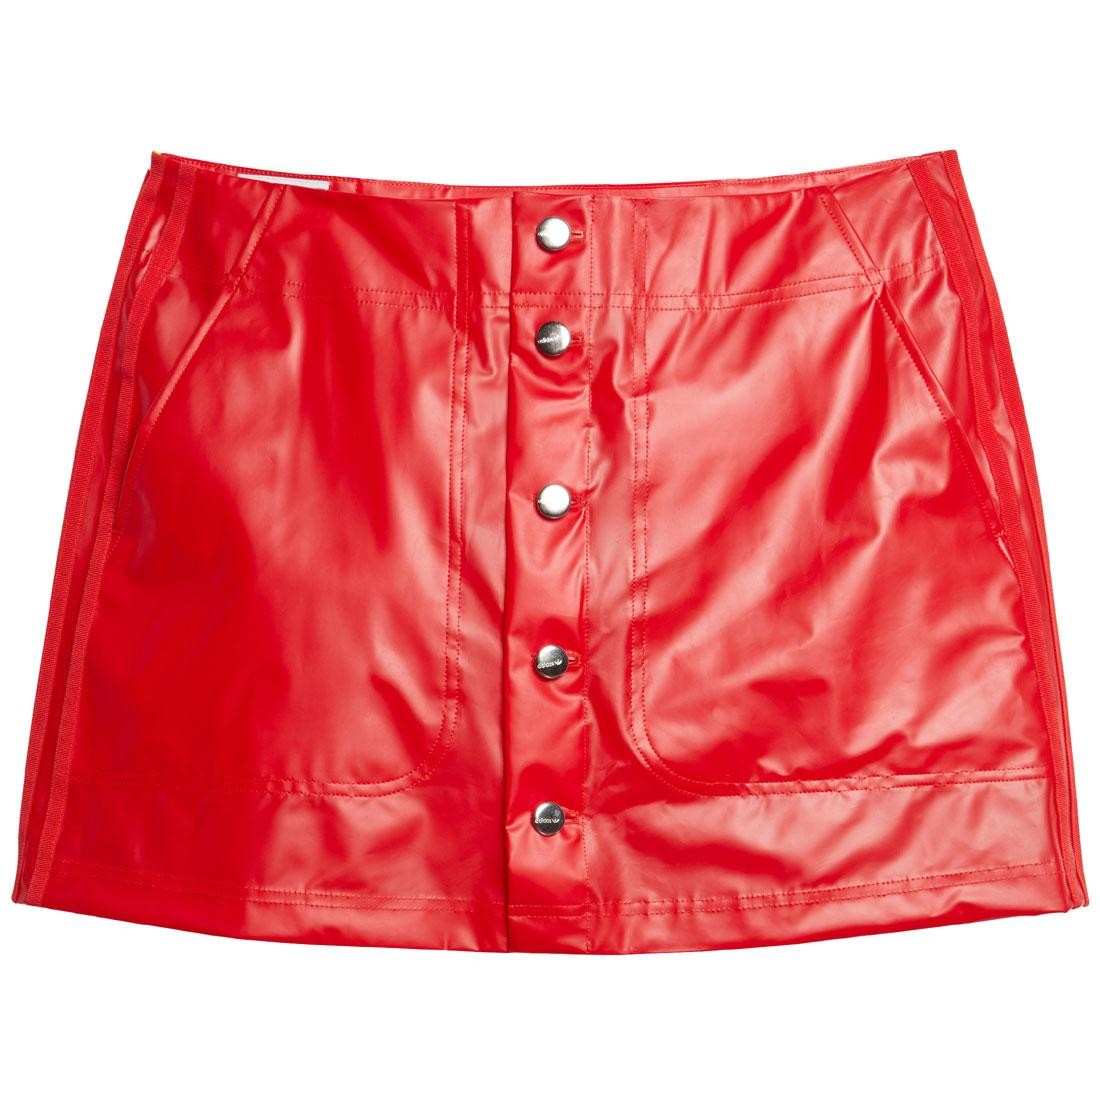 Verovering Regelmatigheid Kilometers Adidas x Fiorucci Women Kiss Mini Skirt red